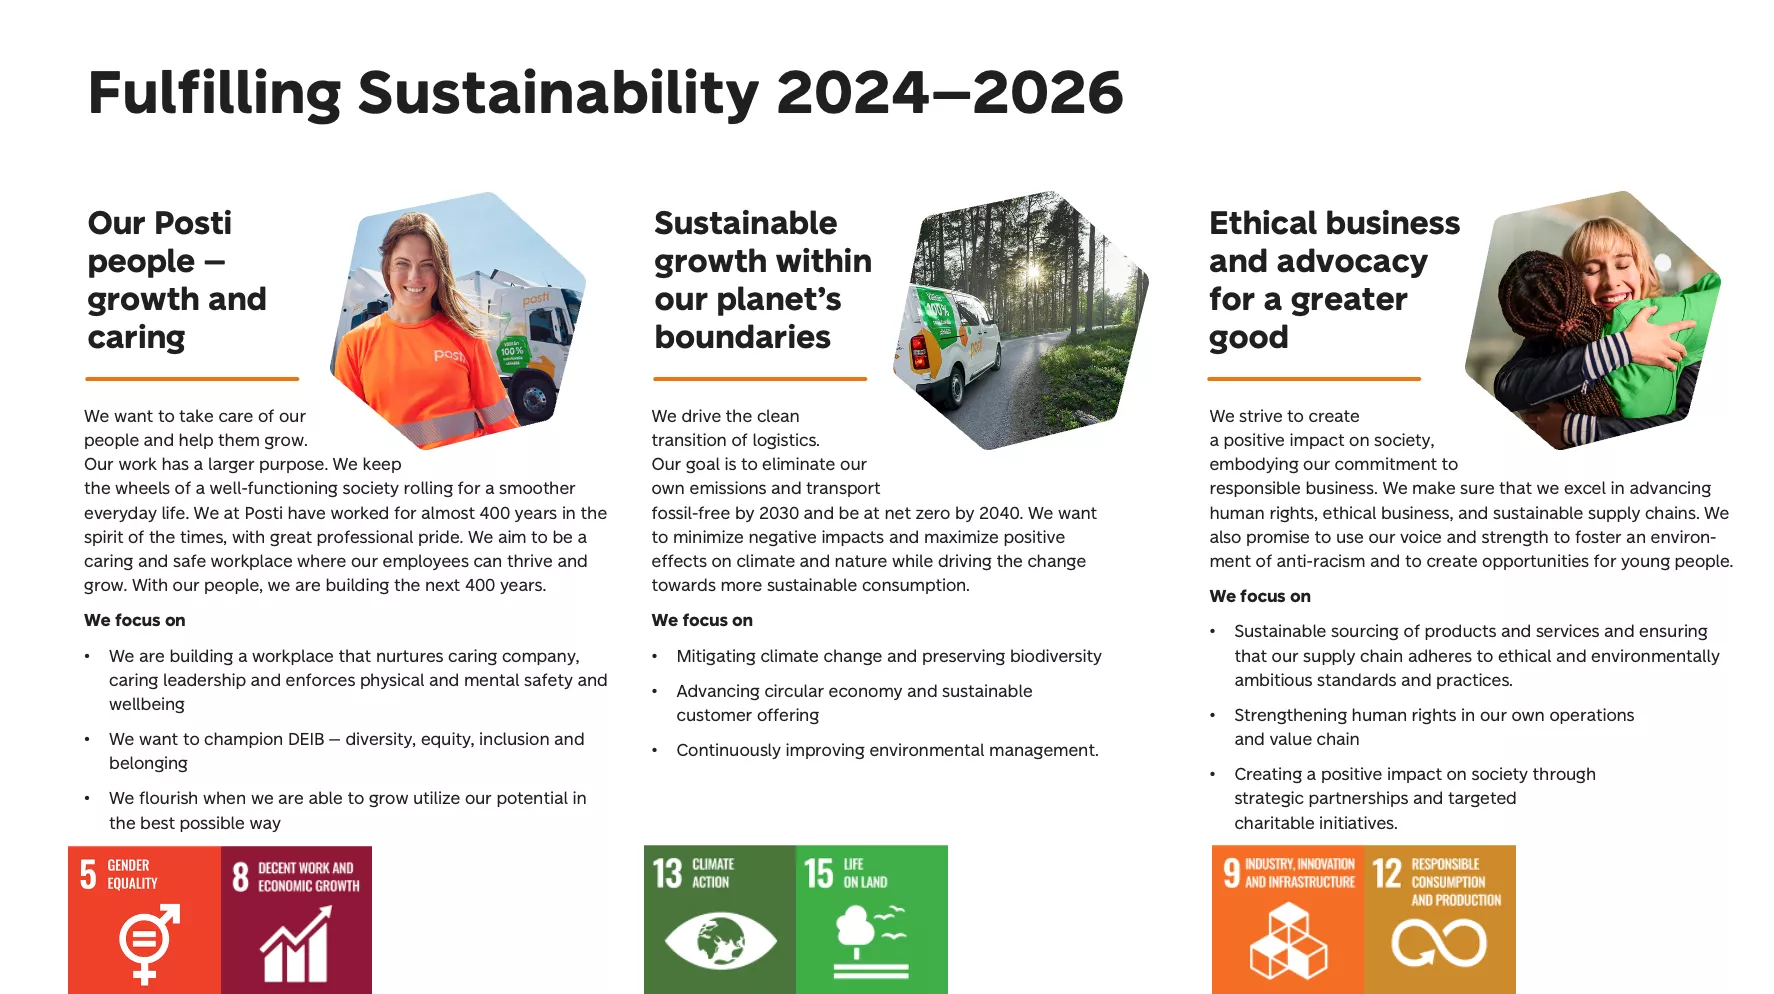 Fulfilling sustainability 2024-2026